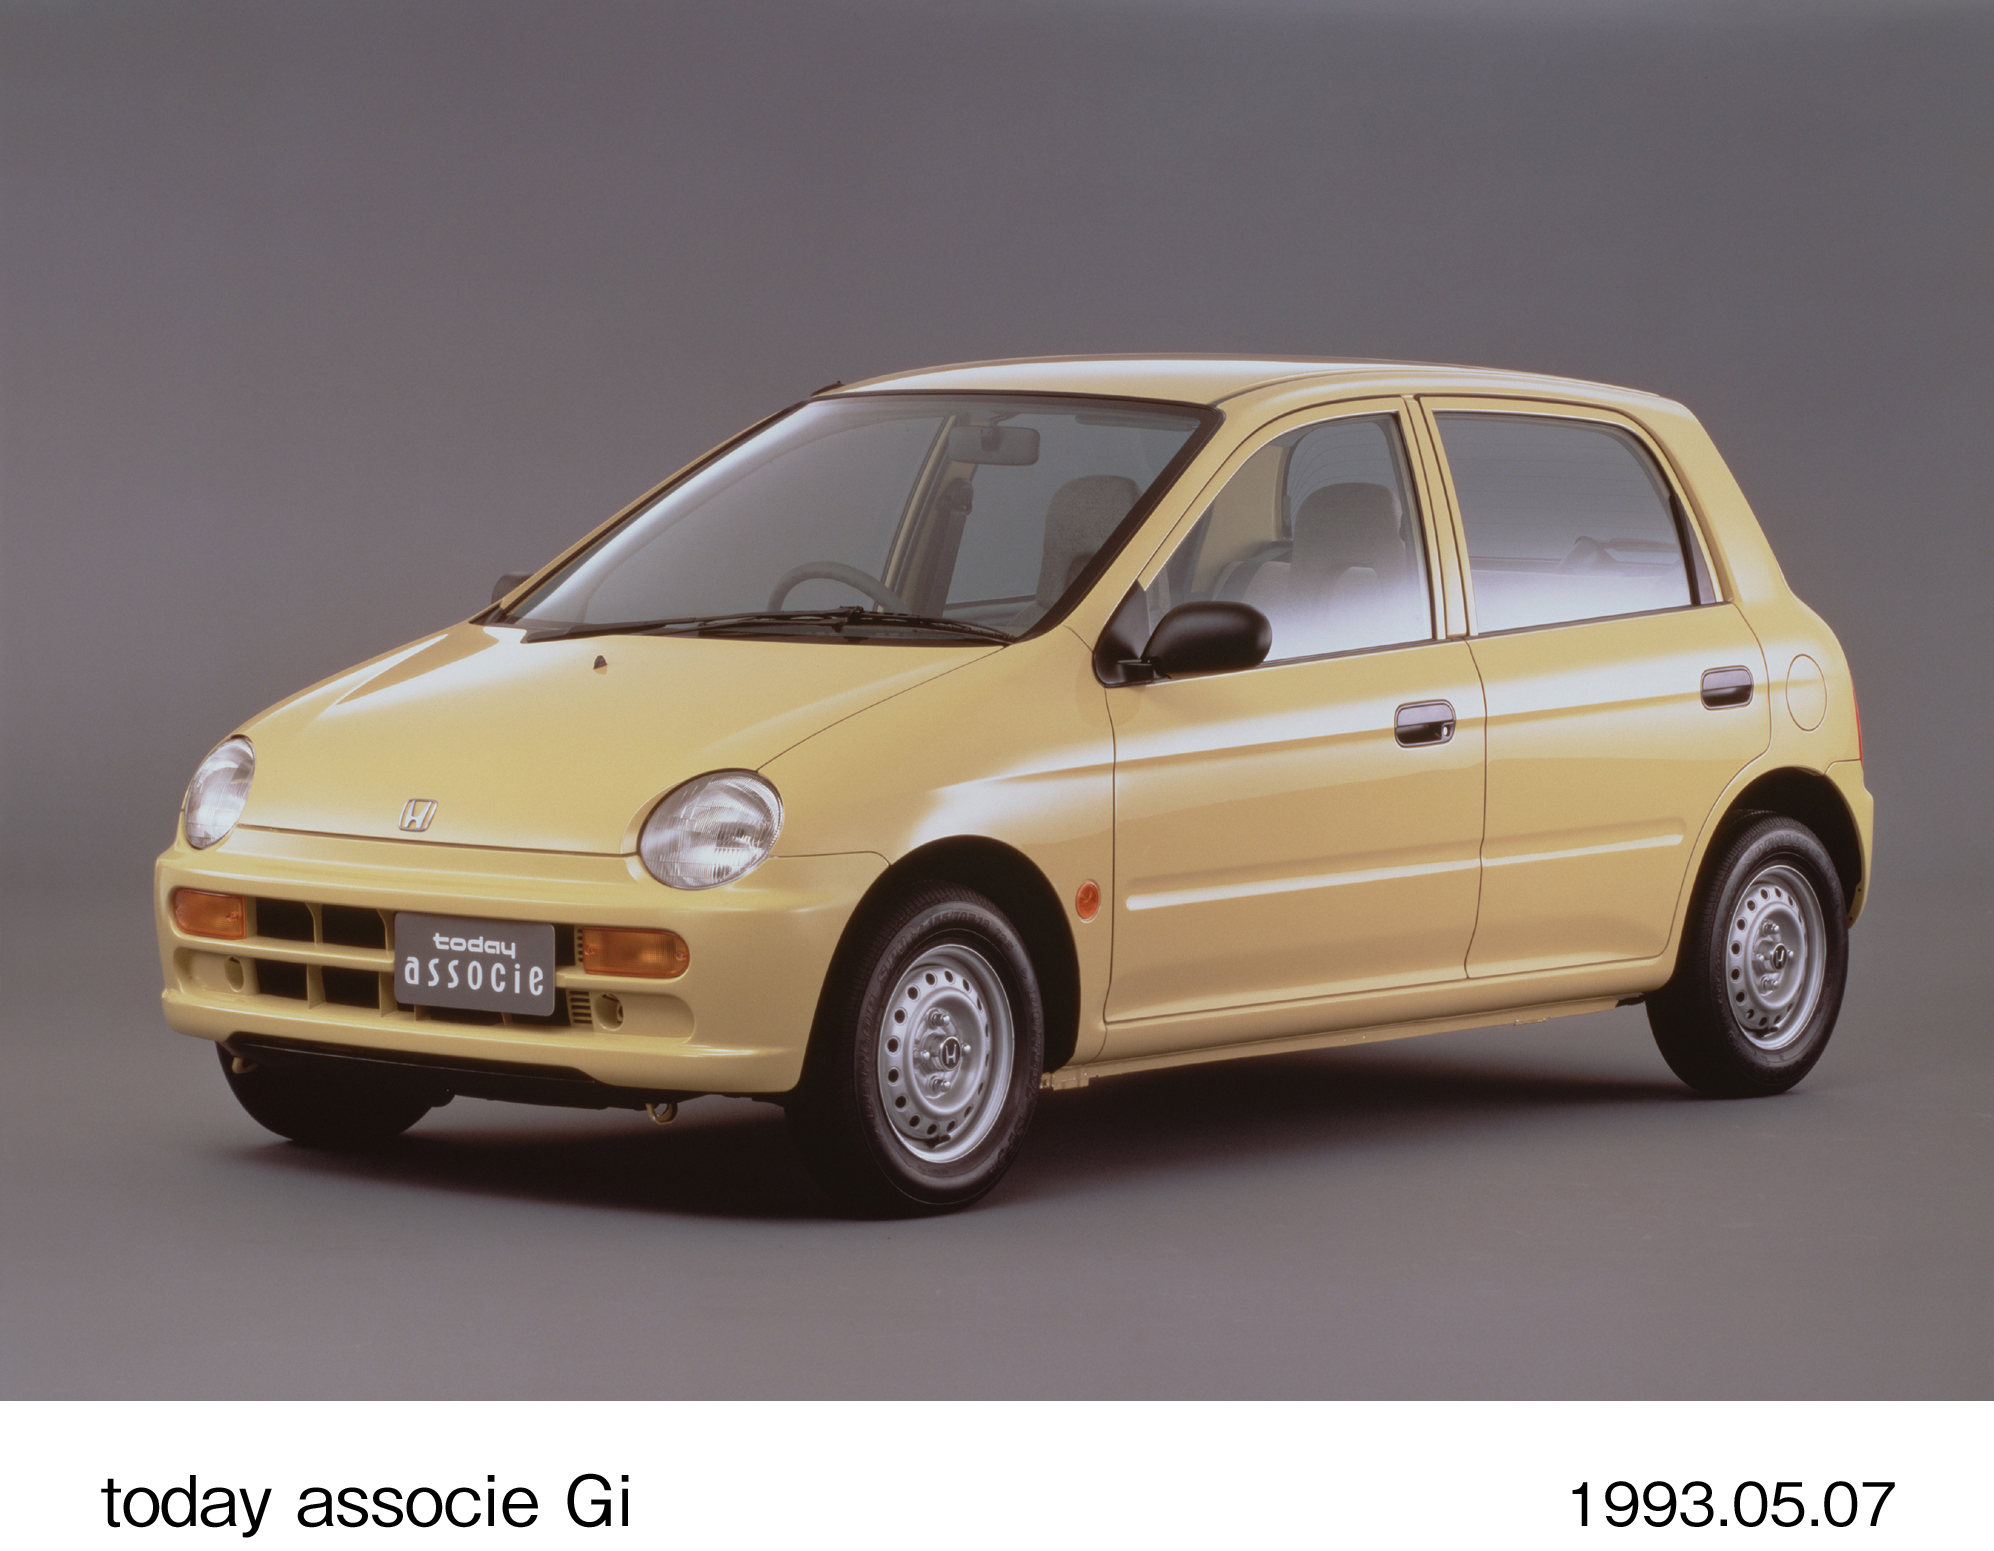 4ドアの軽乗用車「トゥデイ アソシエ」を発売 | Honda 企業情報サイト